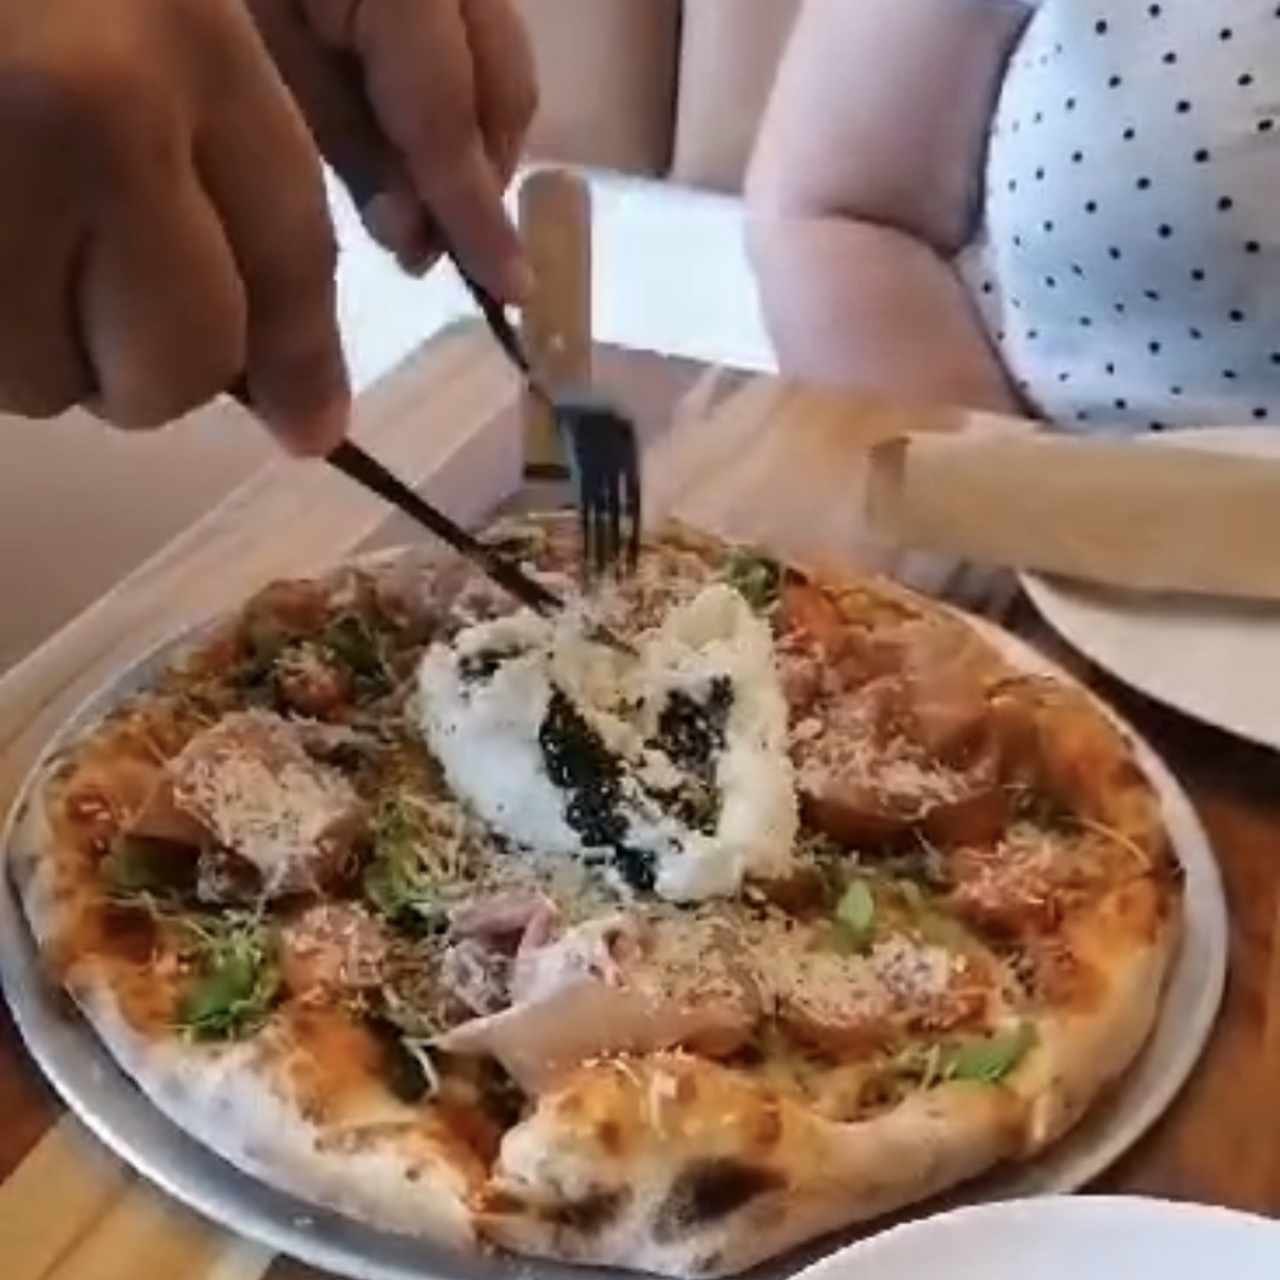 Pizza Burrata